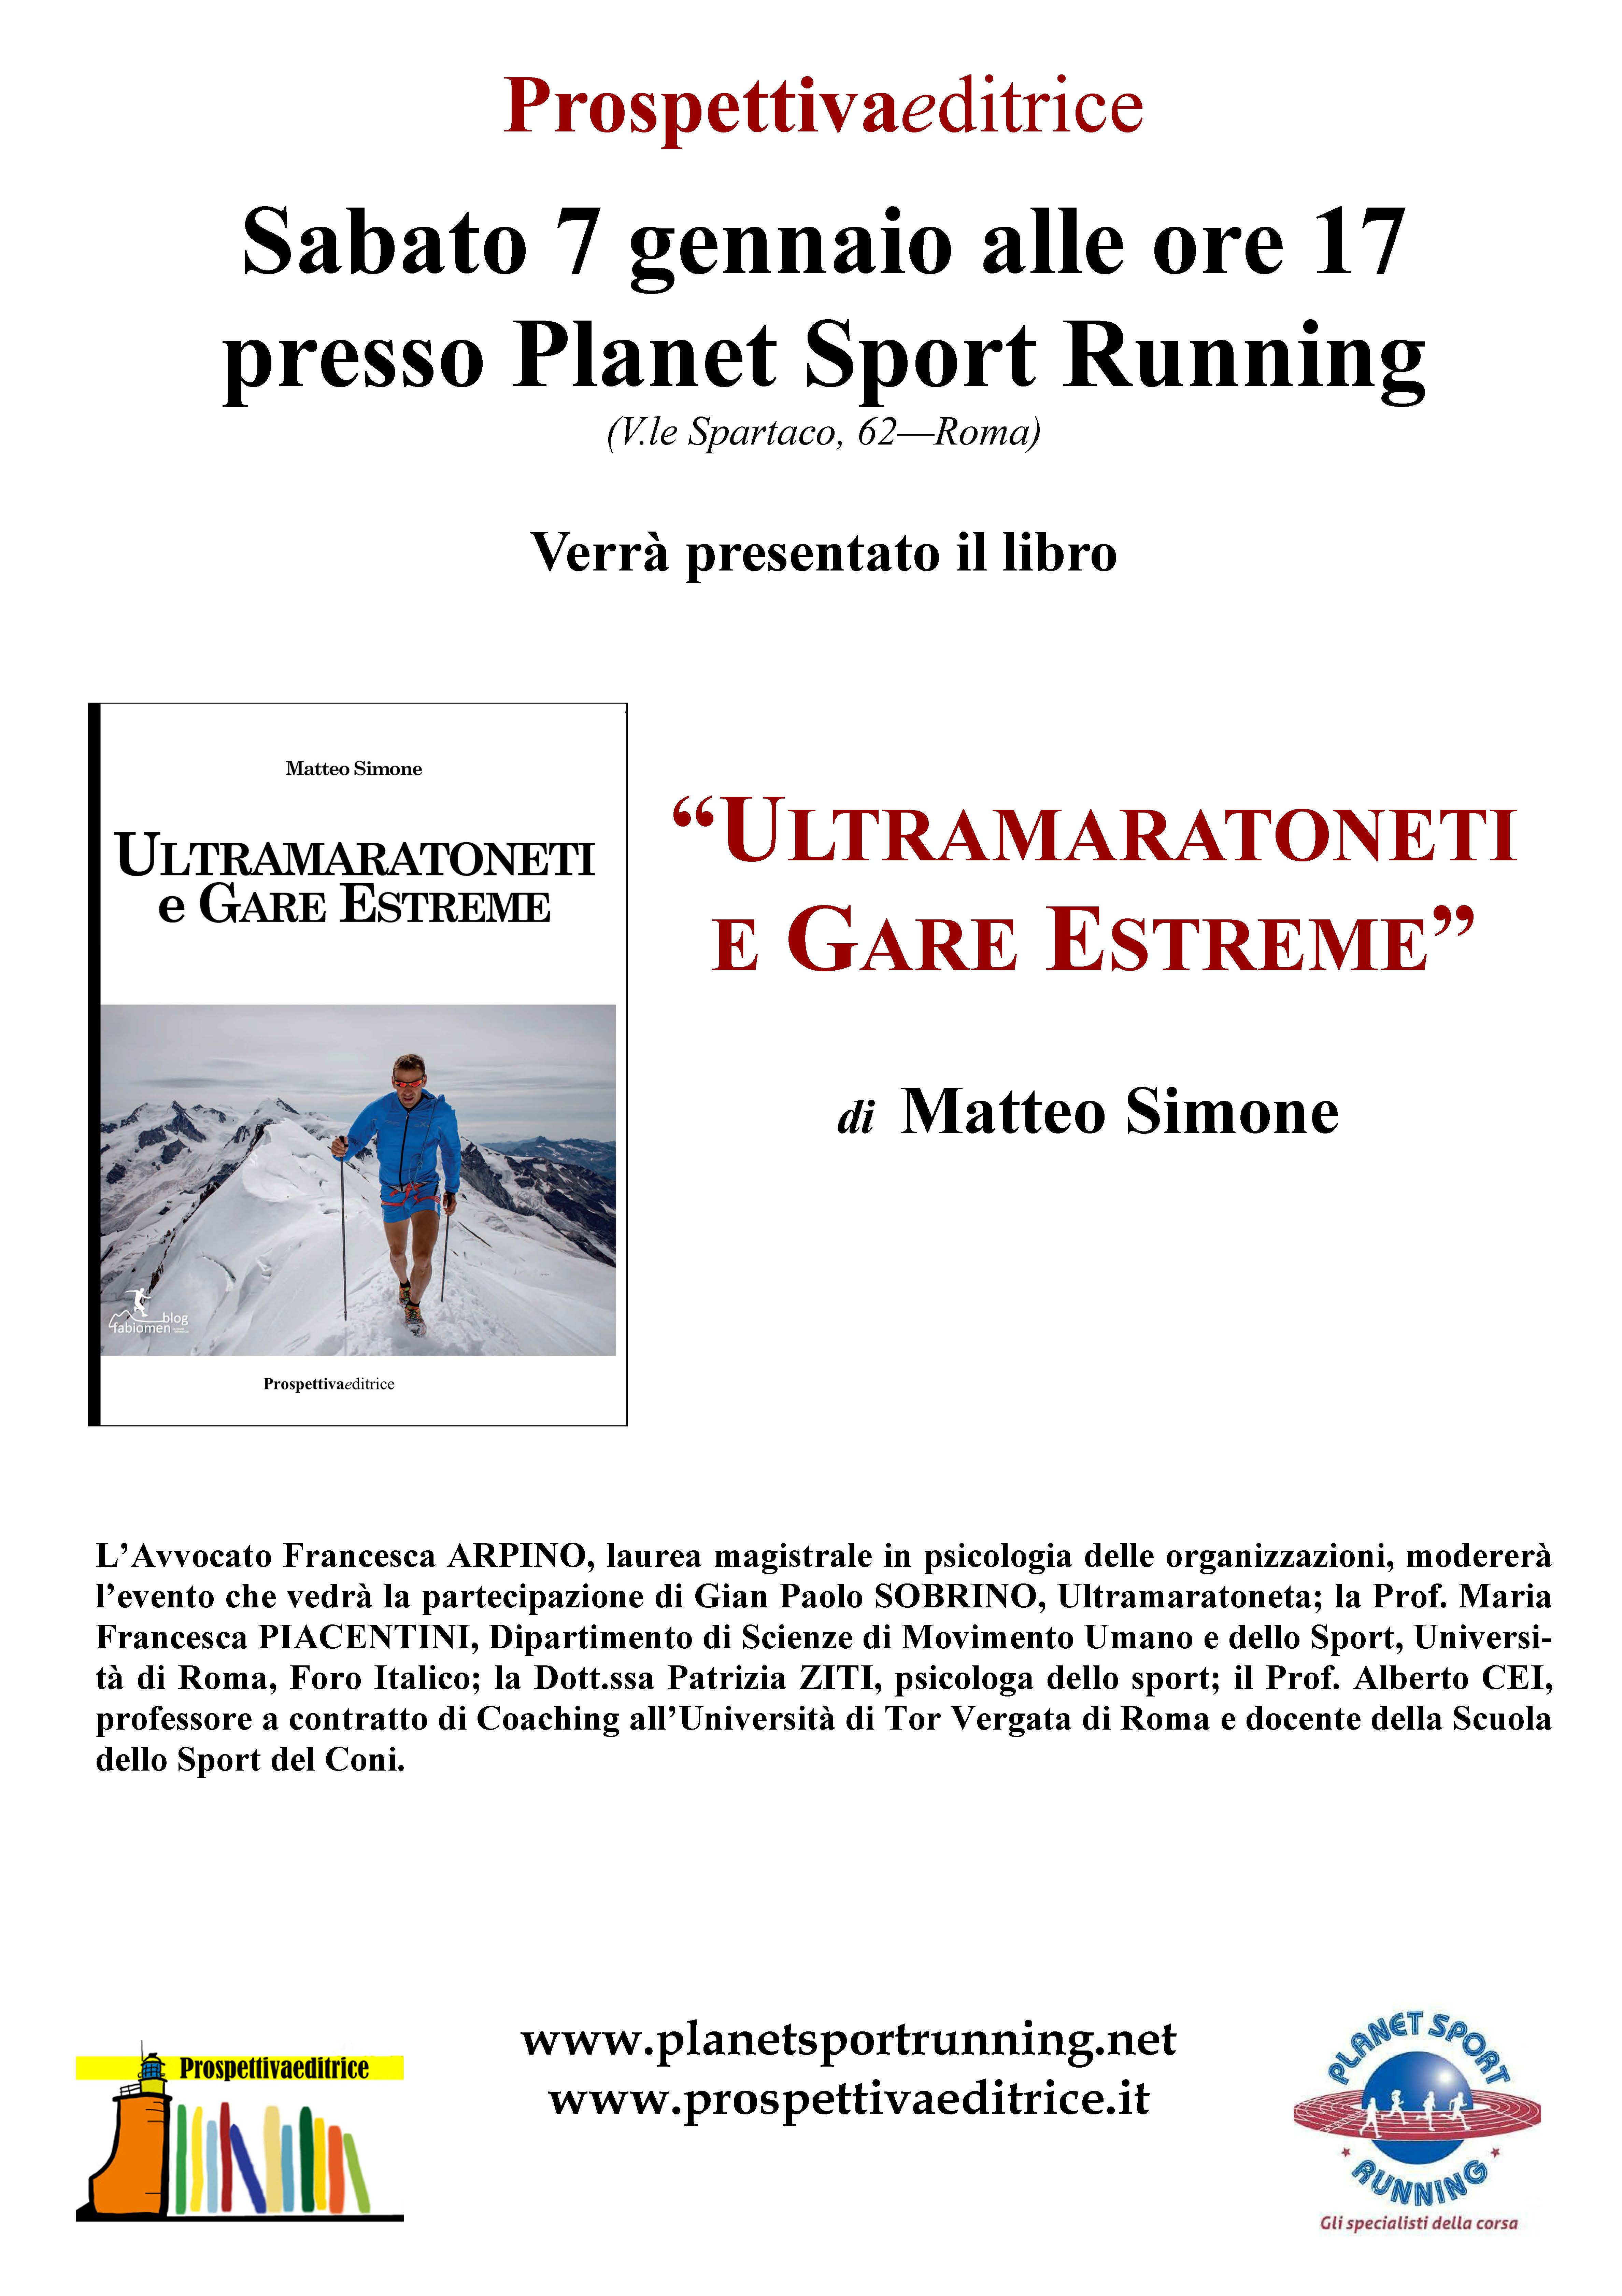 Foto 4 - Presso Planet Sport Running, Ultramaratoneti e gare estreme